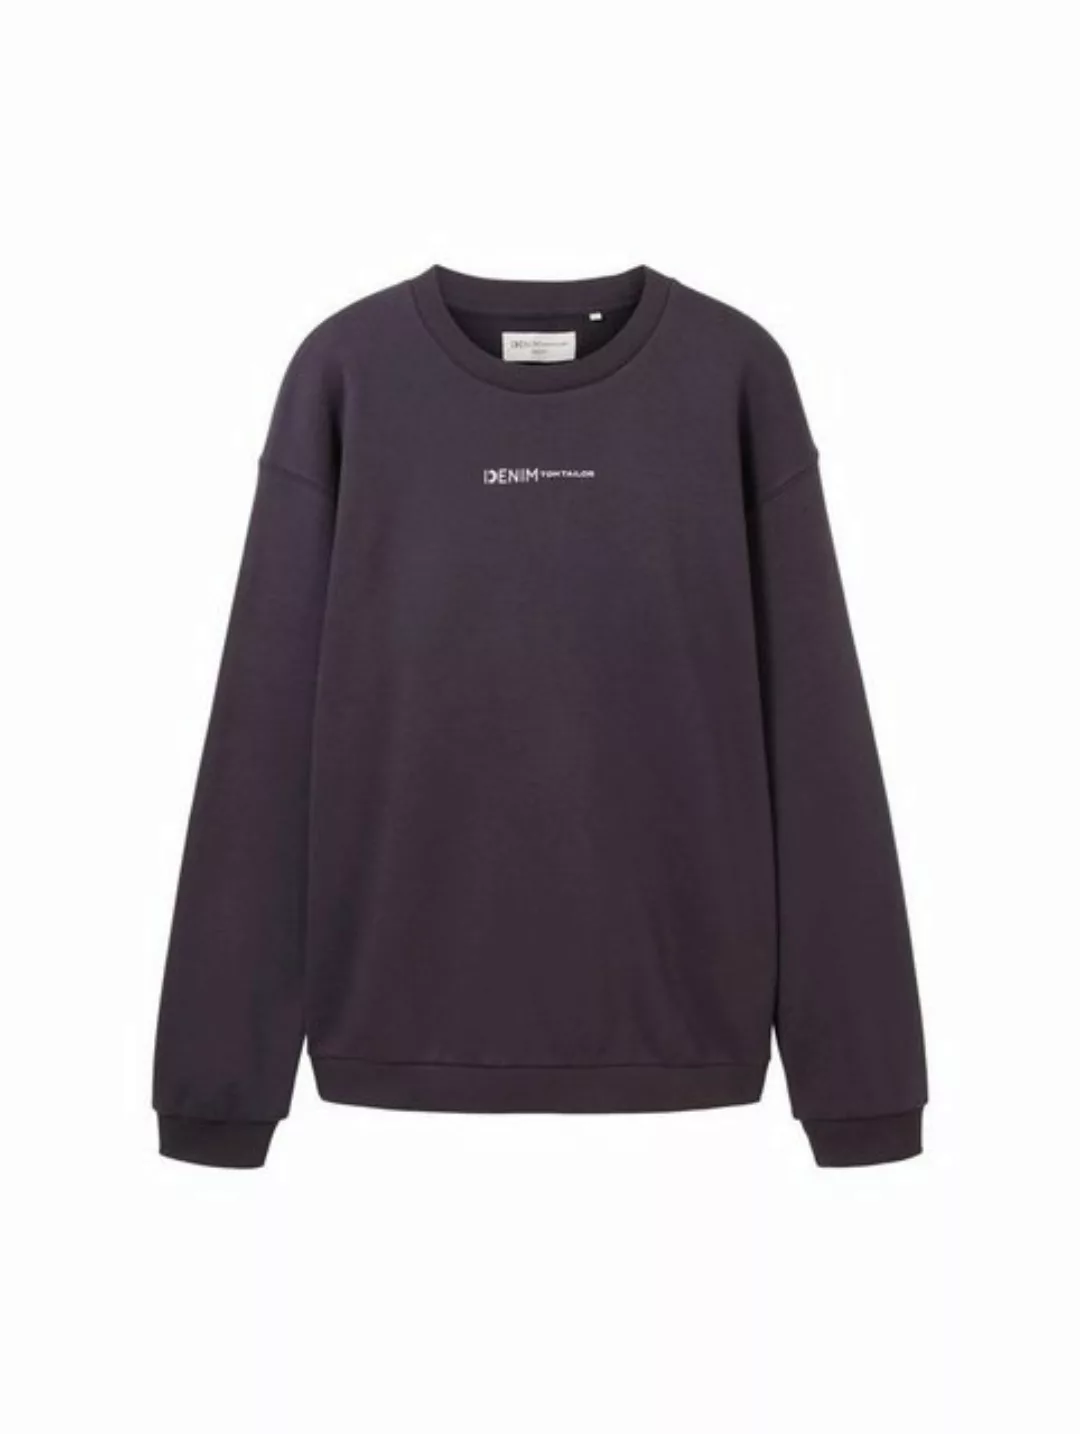 TOM TAILOR Denim Sweatshirt crew neck sweater with print günstig online kaufen